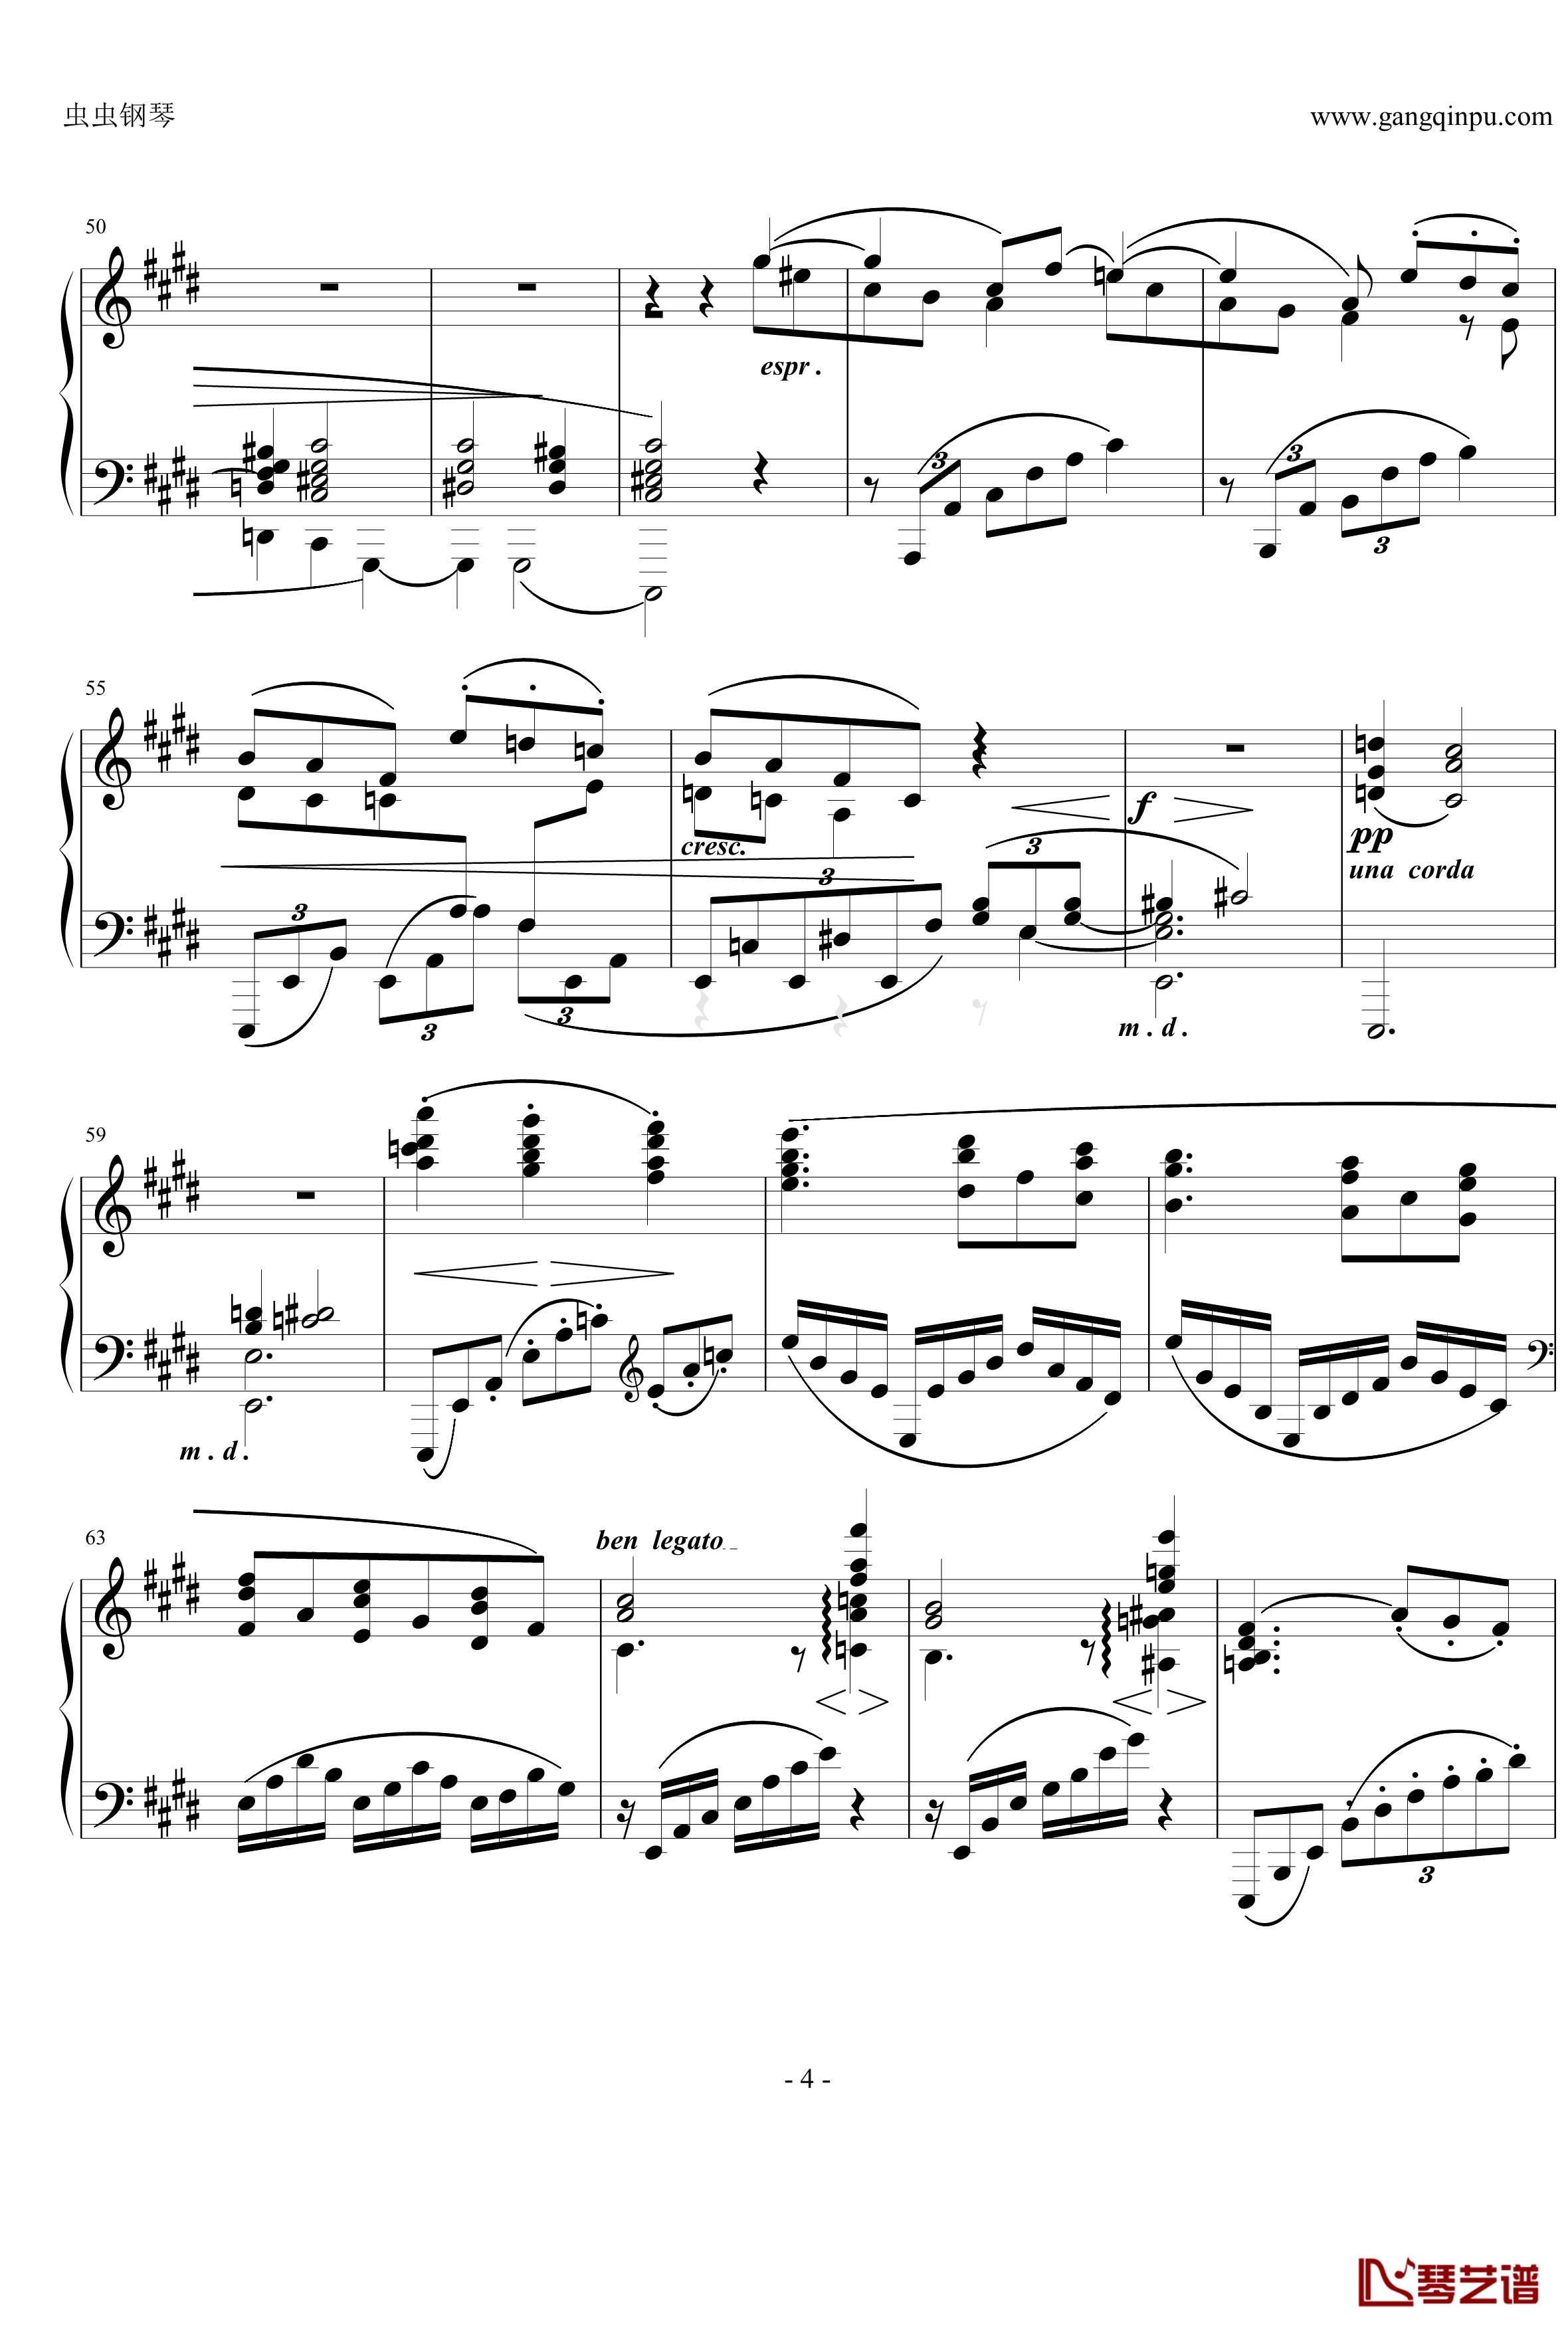 间奏曲钢琴谱Op.116  No.4-勃拉姆斯-Brahms